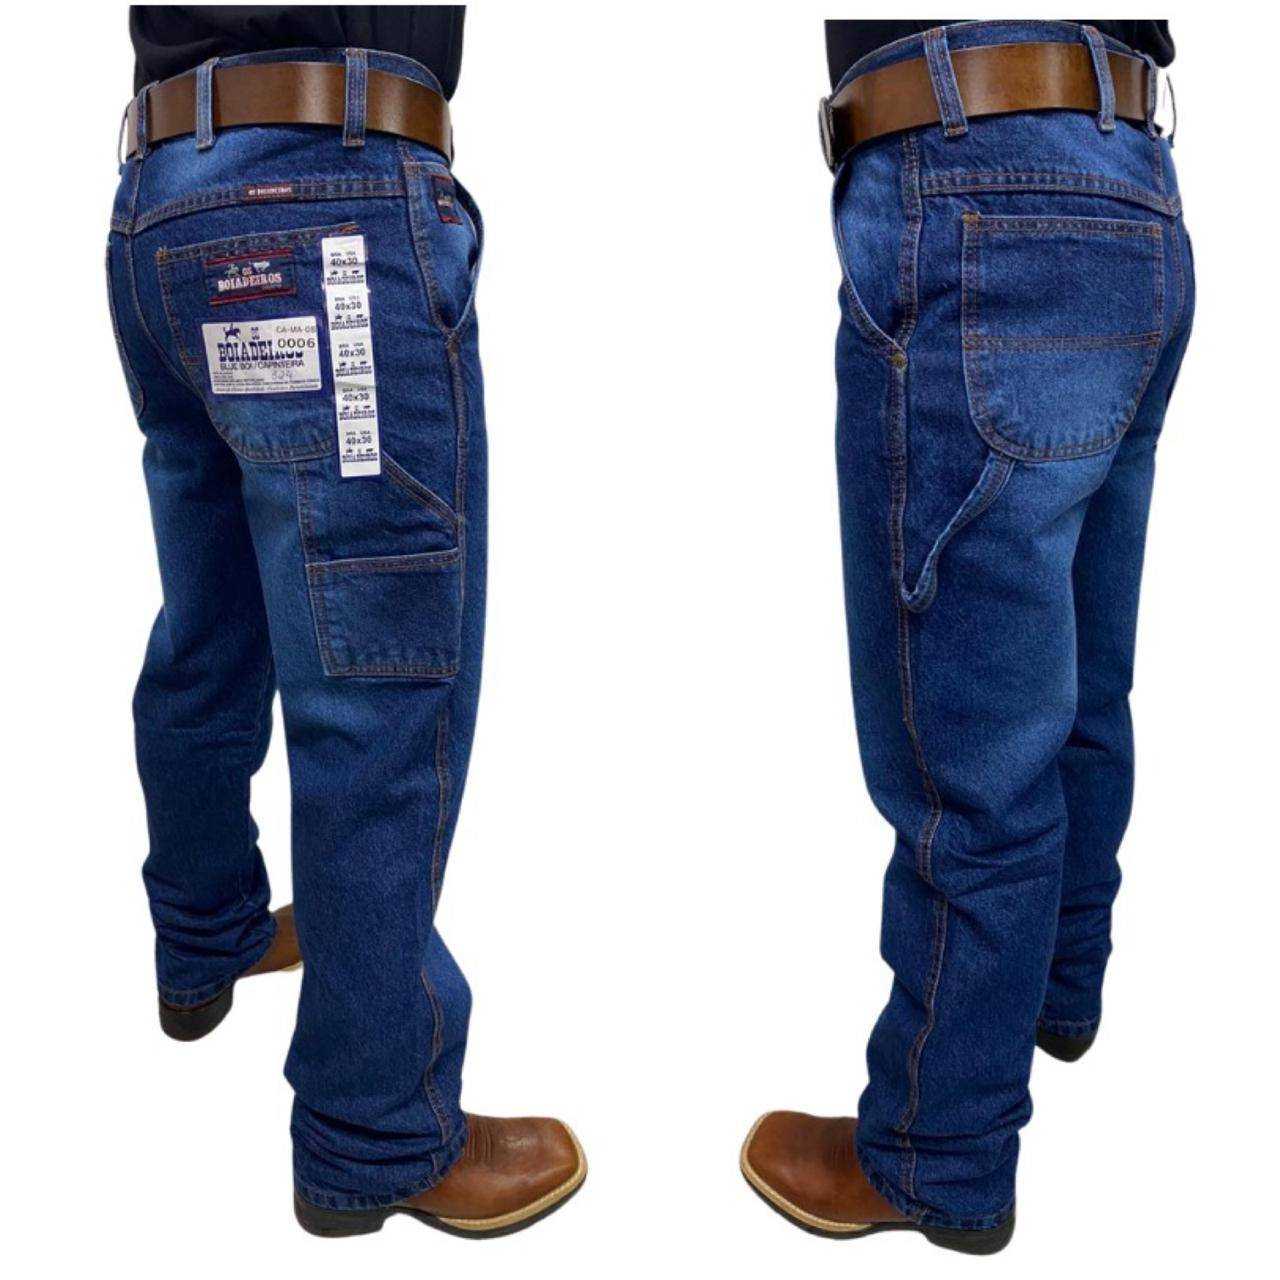 Calça Jeans Masculina Carpinteira Os Boiadeiros 100% Algodão